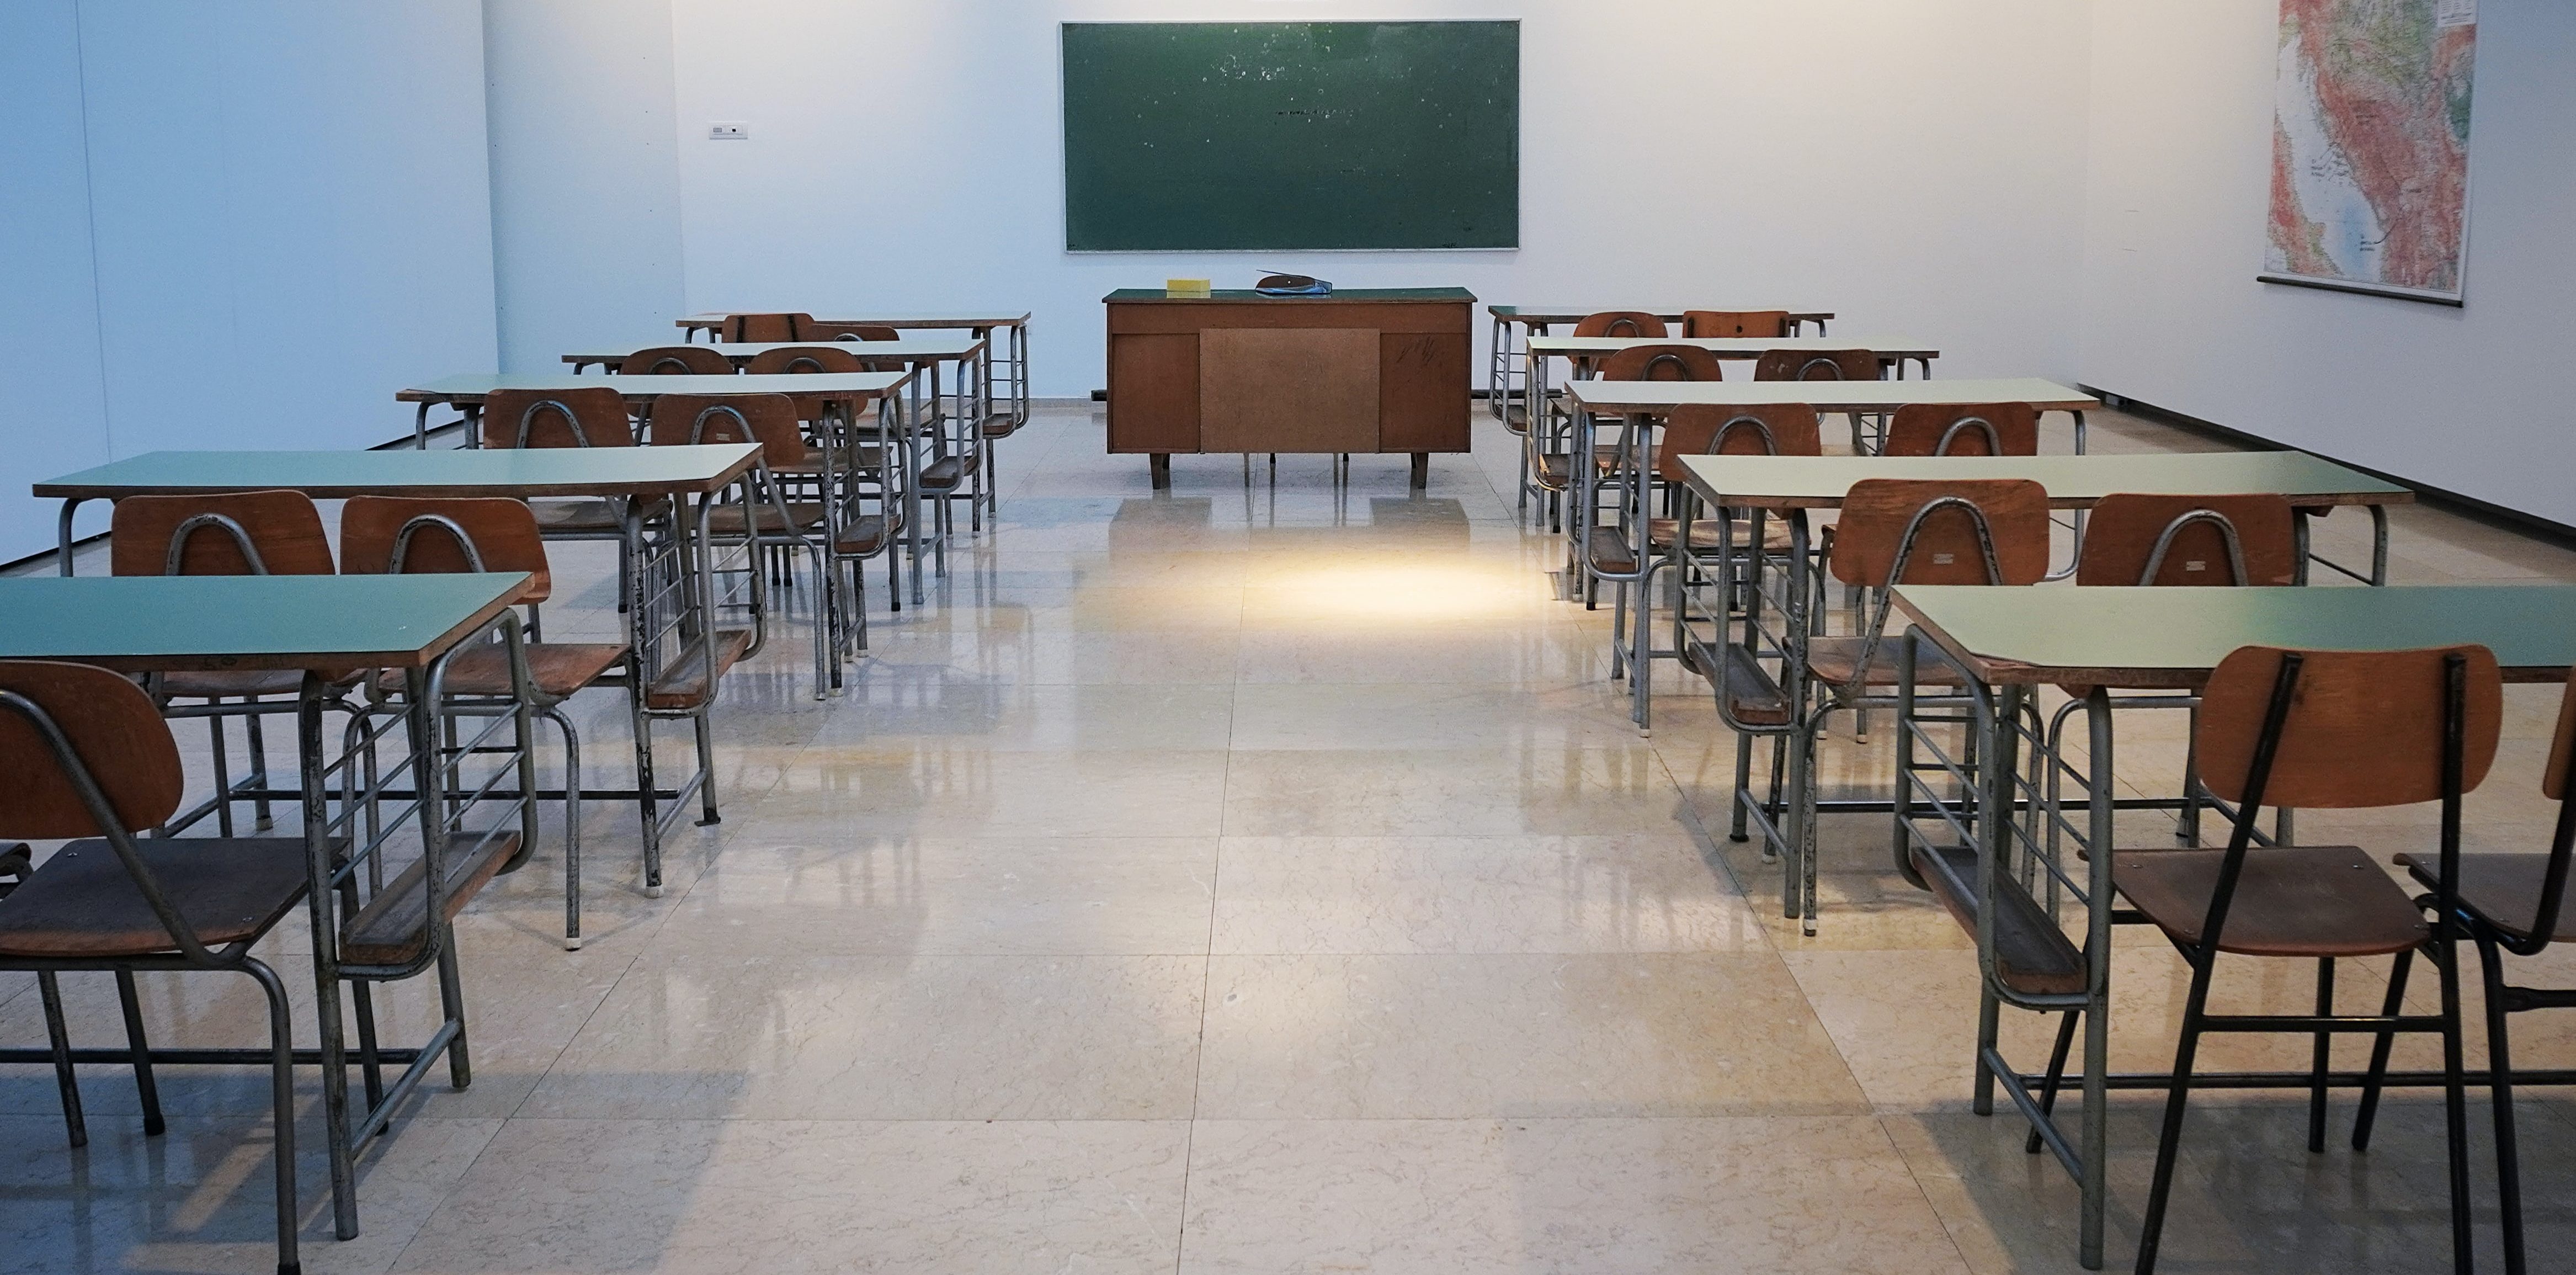 Chiusura delle scuole in Puglia, grave errore di prospettiva